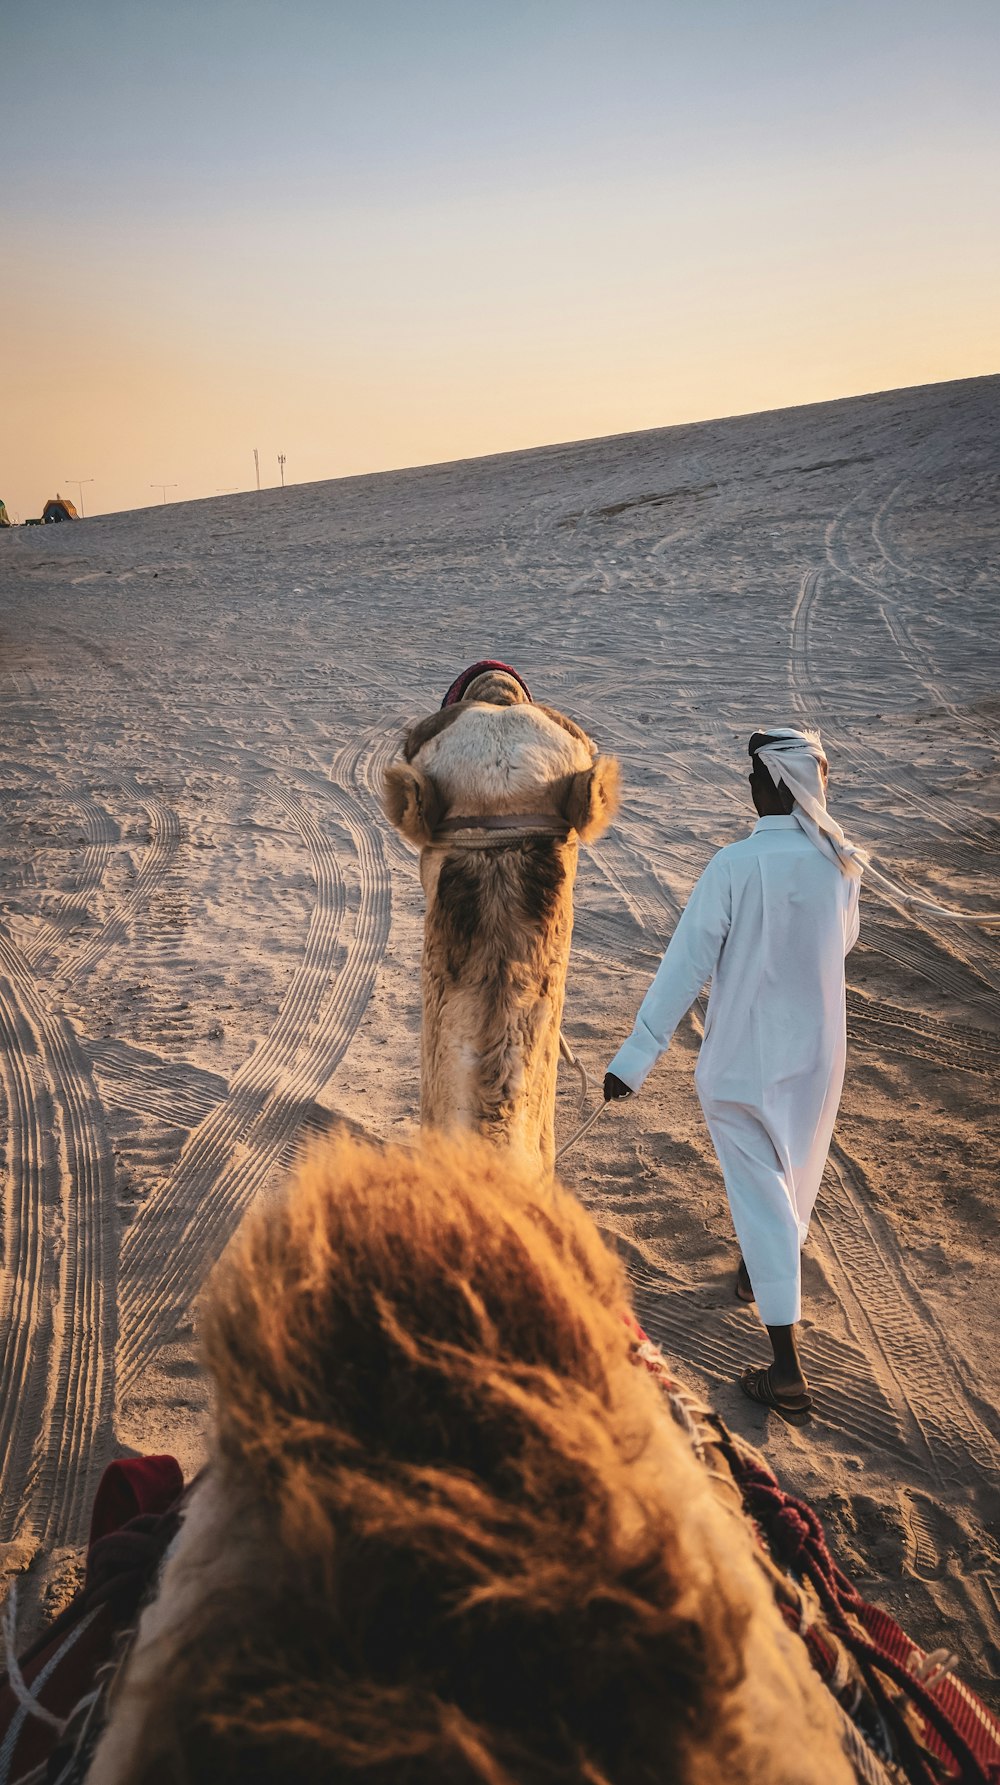 uomo in abito bianco in piedi accanto al cammello marrone durante il giorno